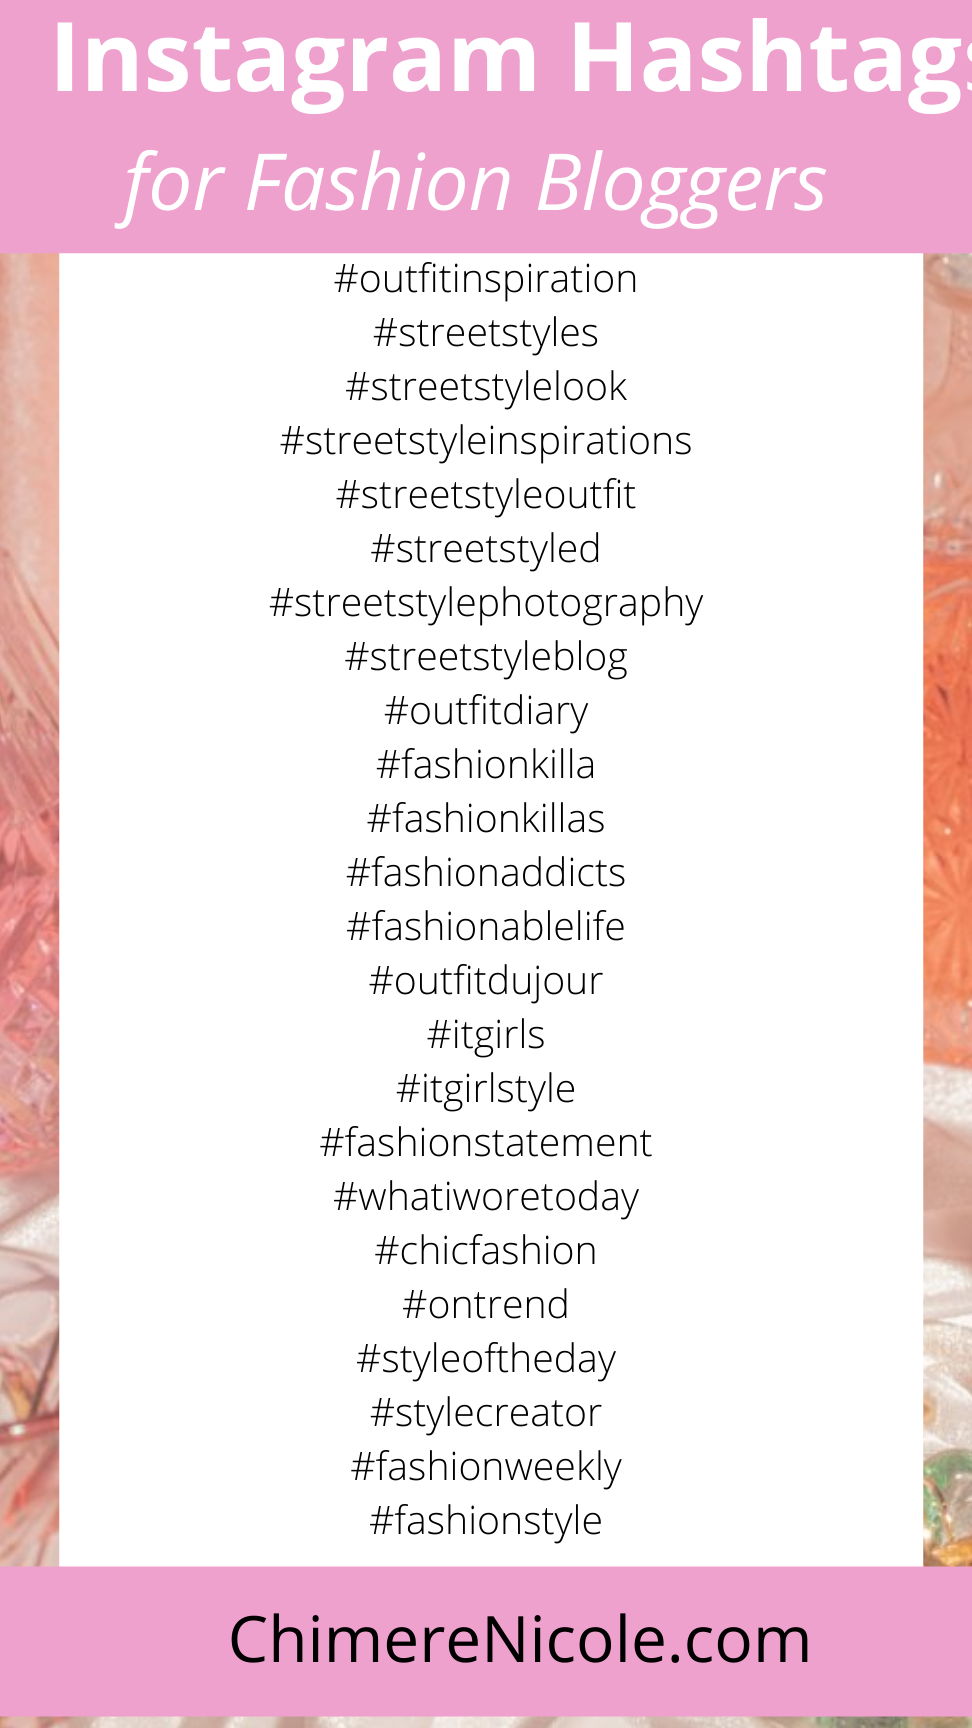 Bloggers de moda: aumente su alcance en Instagram con estos hashtags principales